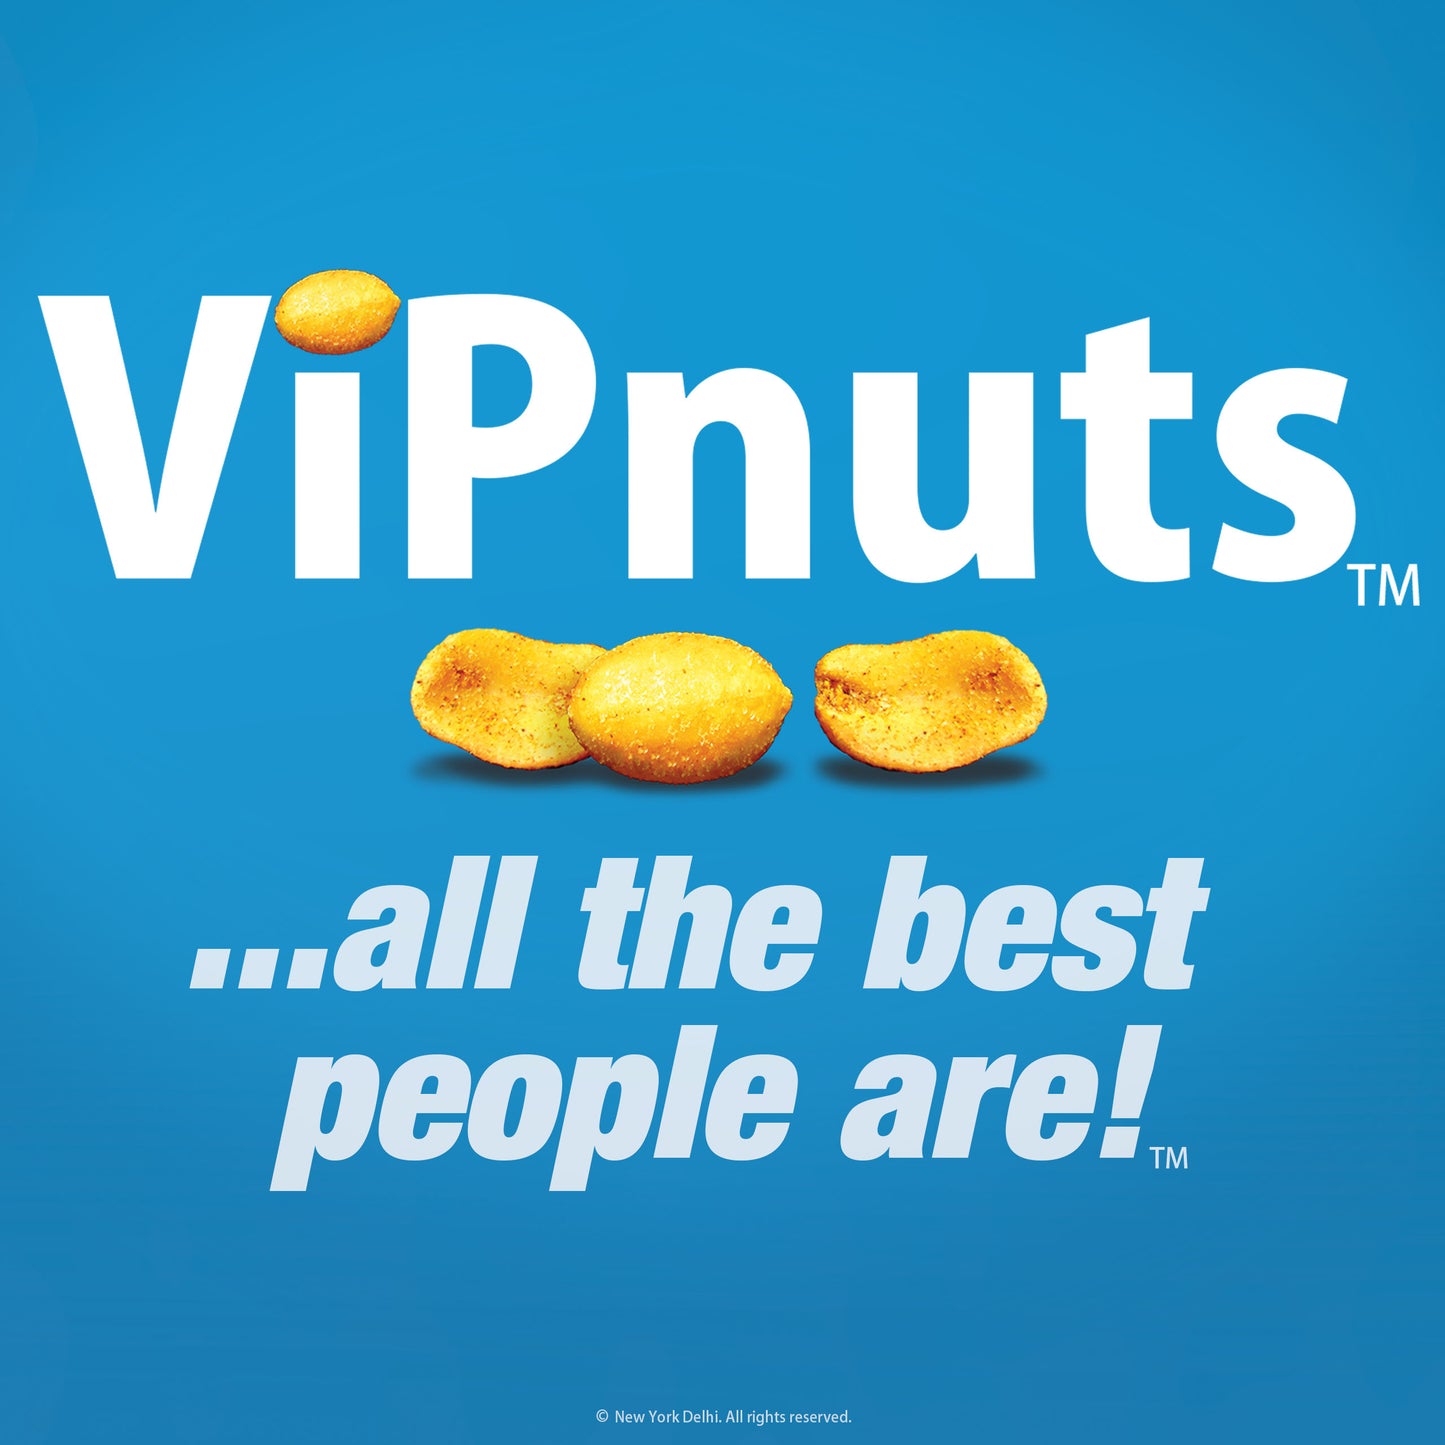 ViPnuts Hot Chilli peanuts 63g pack